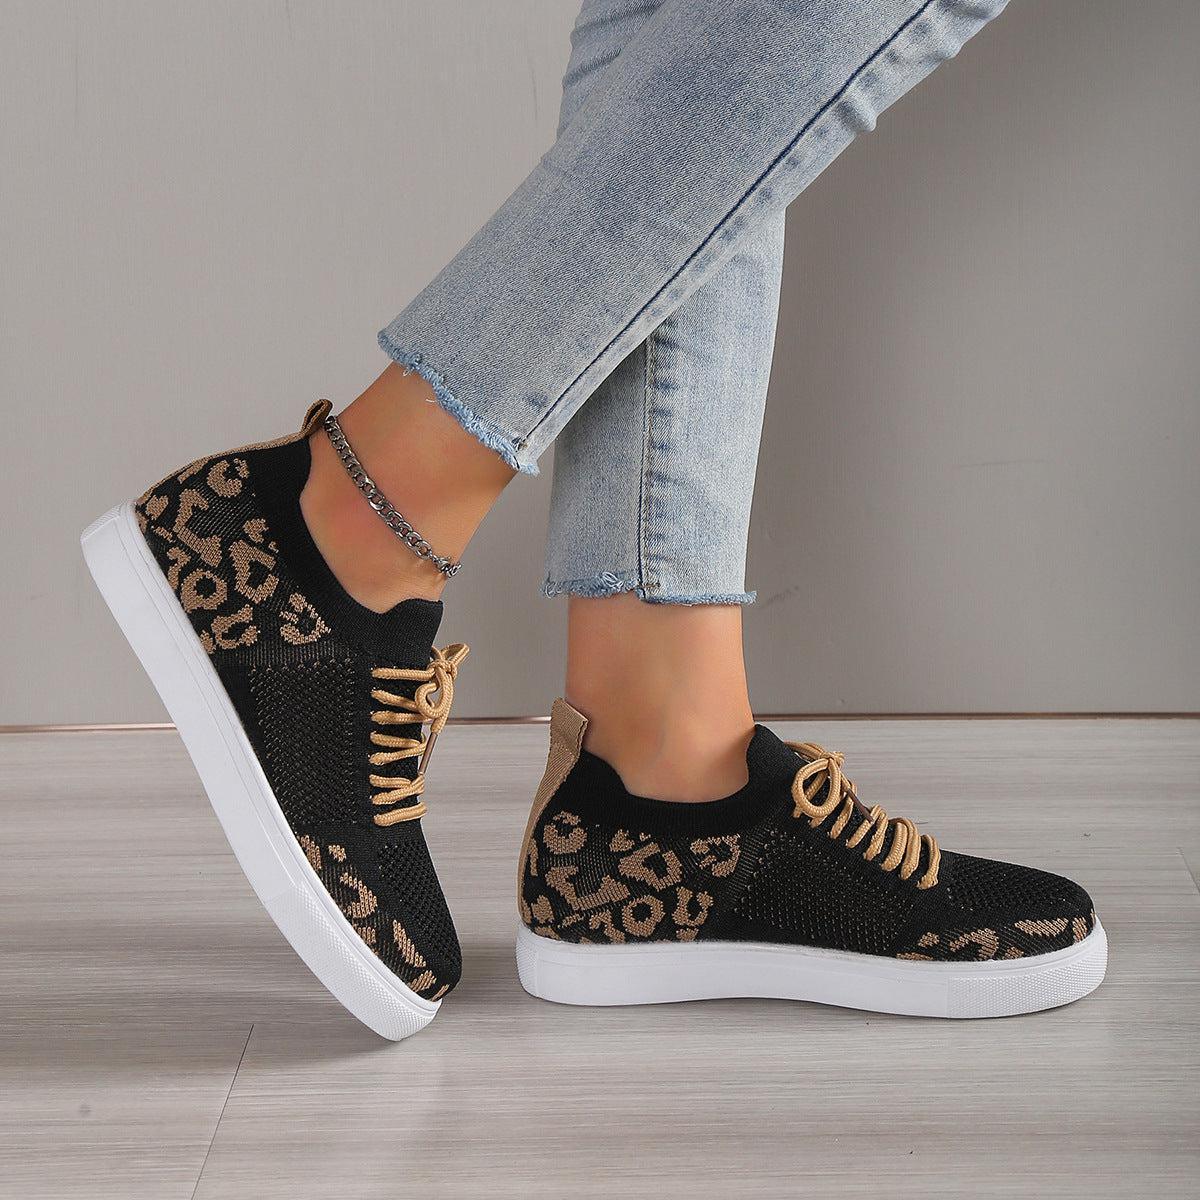 a woman's feet wearing leopard print sneakers